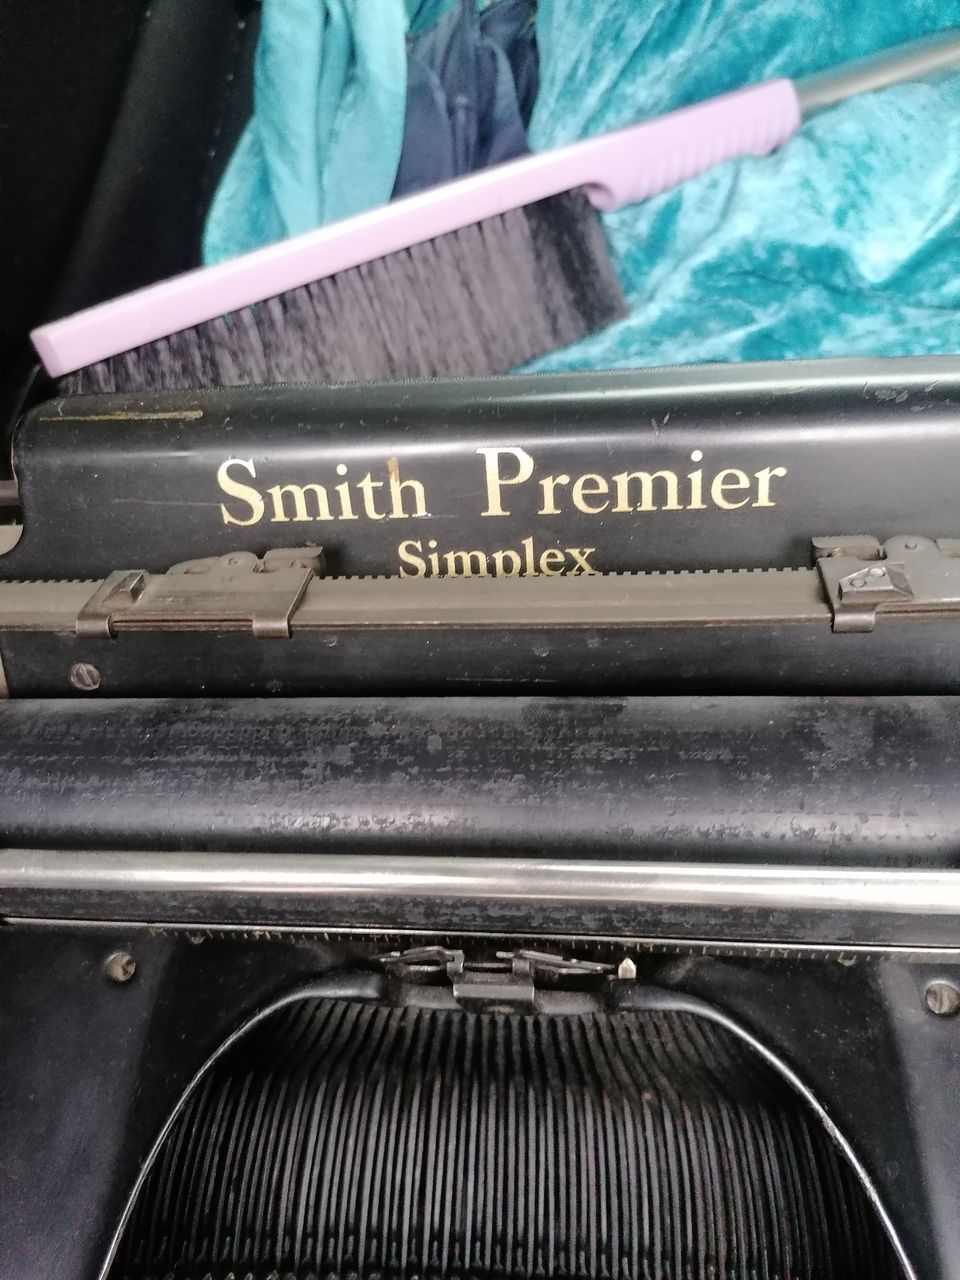 Vanha kirjoituskone Smith premier